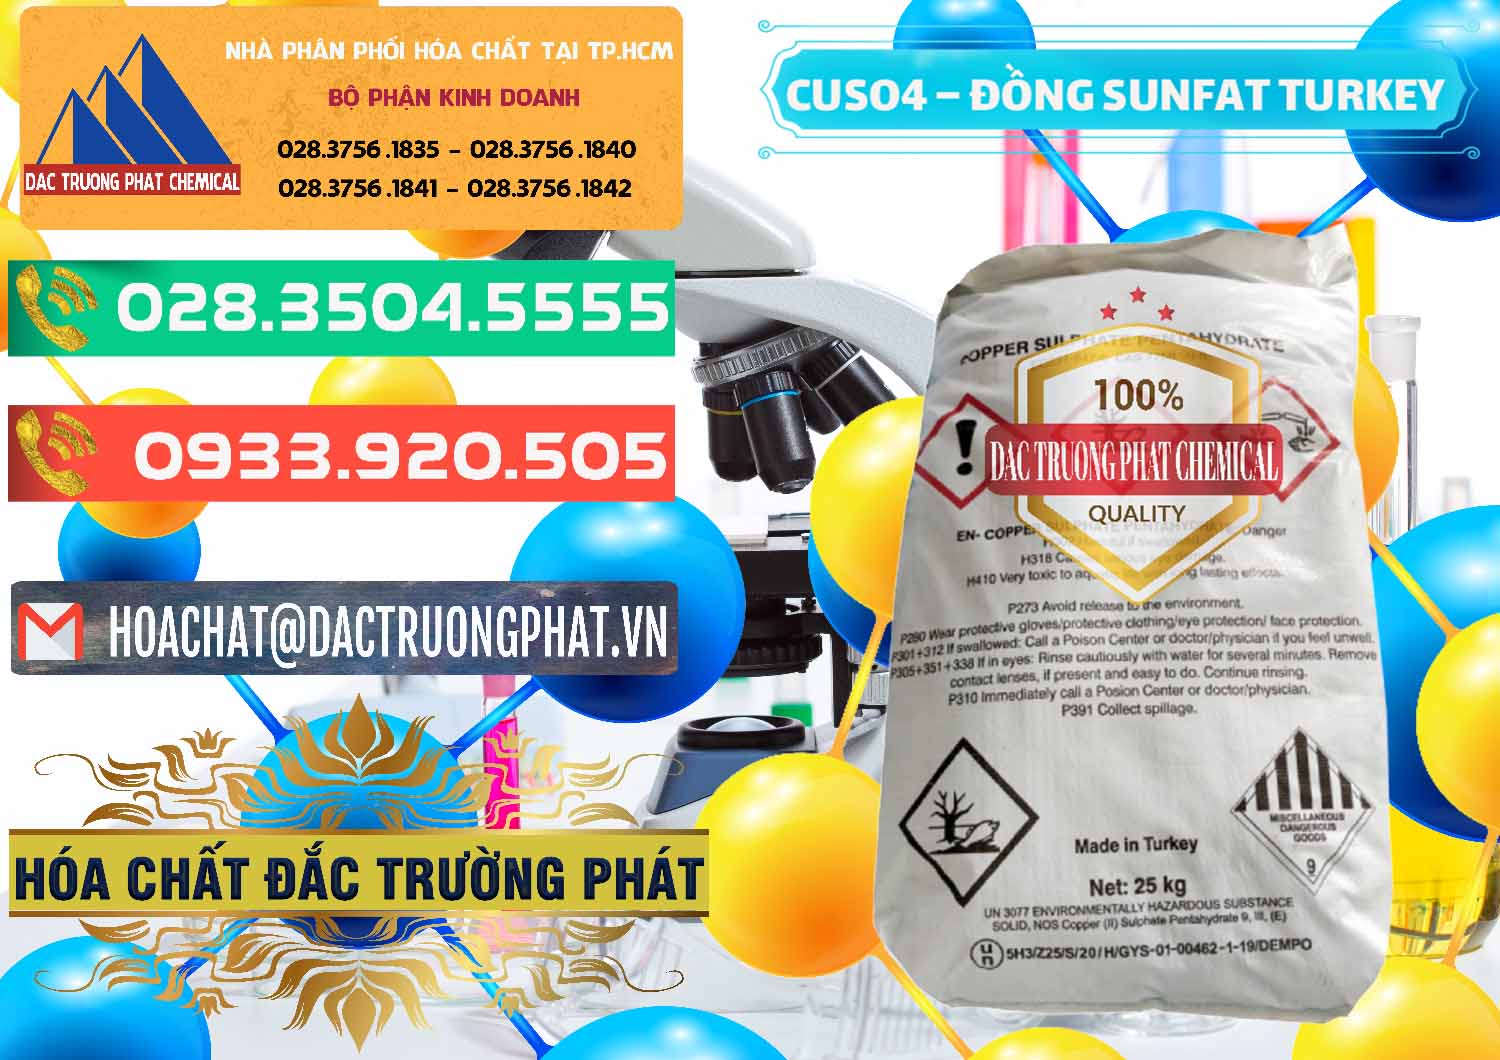 Đơn vị chuyên bán - cung cấp CuSO4 – Đồng Sunfat Thổ Nhĩ Kỳ Turkey - 0481 - Công ty phân phối & cung cấp hóa chất tại TP.HCM - congtyhoachat.com.vn